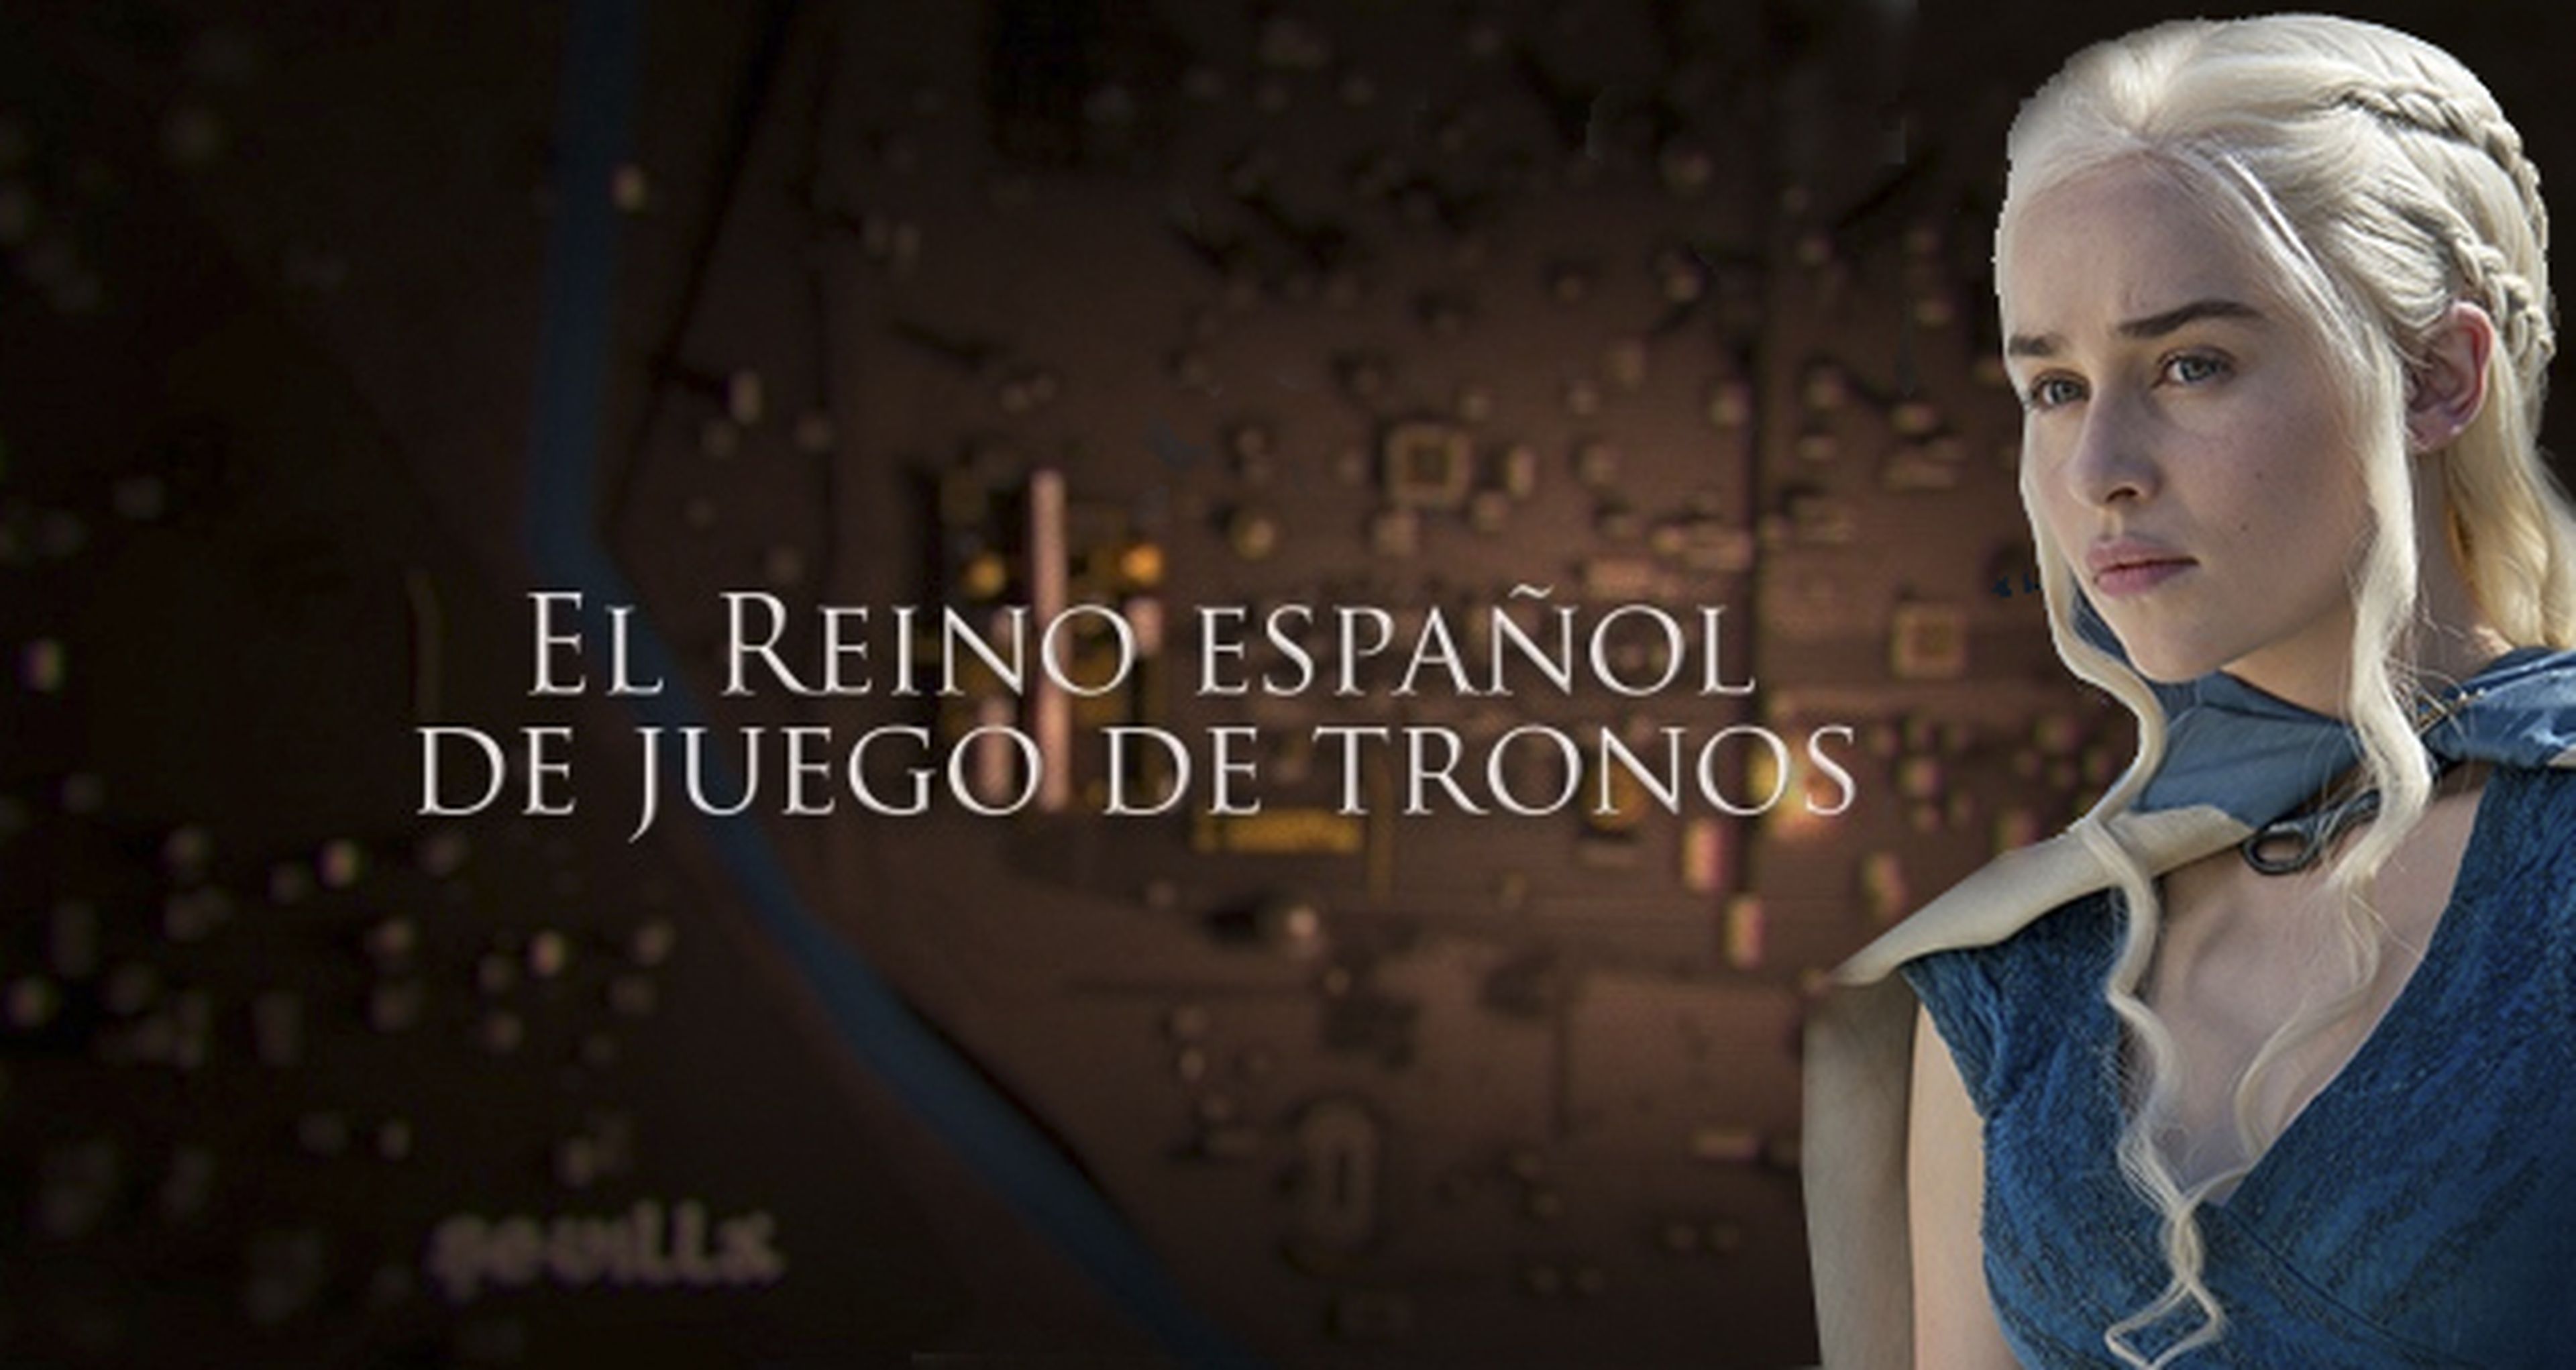 Juego de tronos: Canal + Series lanza el 4 de abril el especial "El reino español"